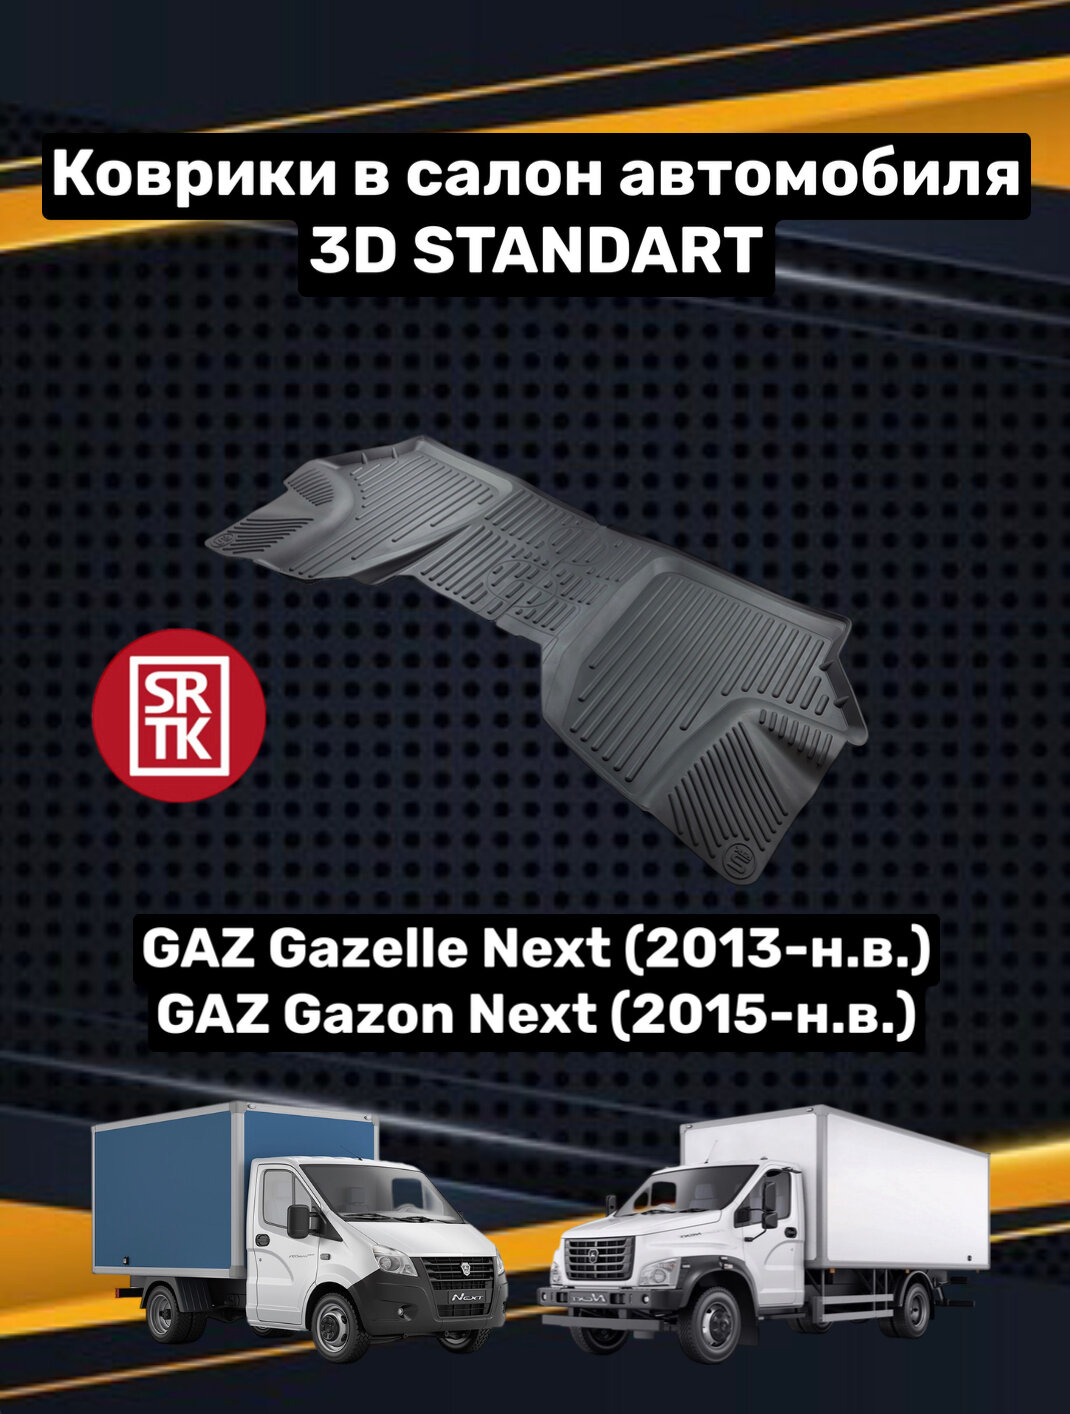 Ковры резиновые Газ Газель Некст/Газон Некст/Gaz Gazelle Next/Gazon Next 3D Standart SRTK (Саранск) передняя пара в салон